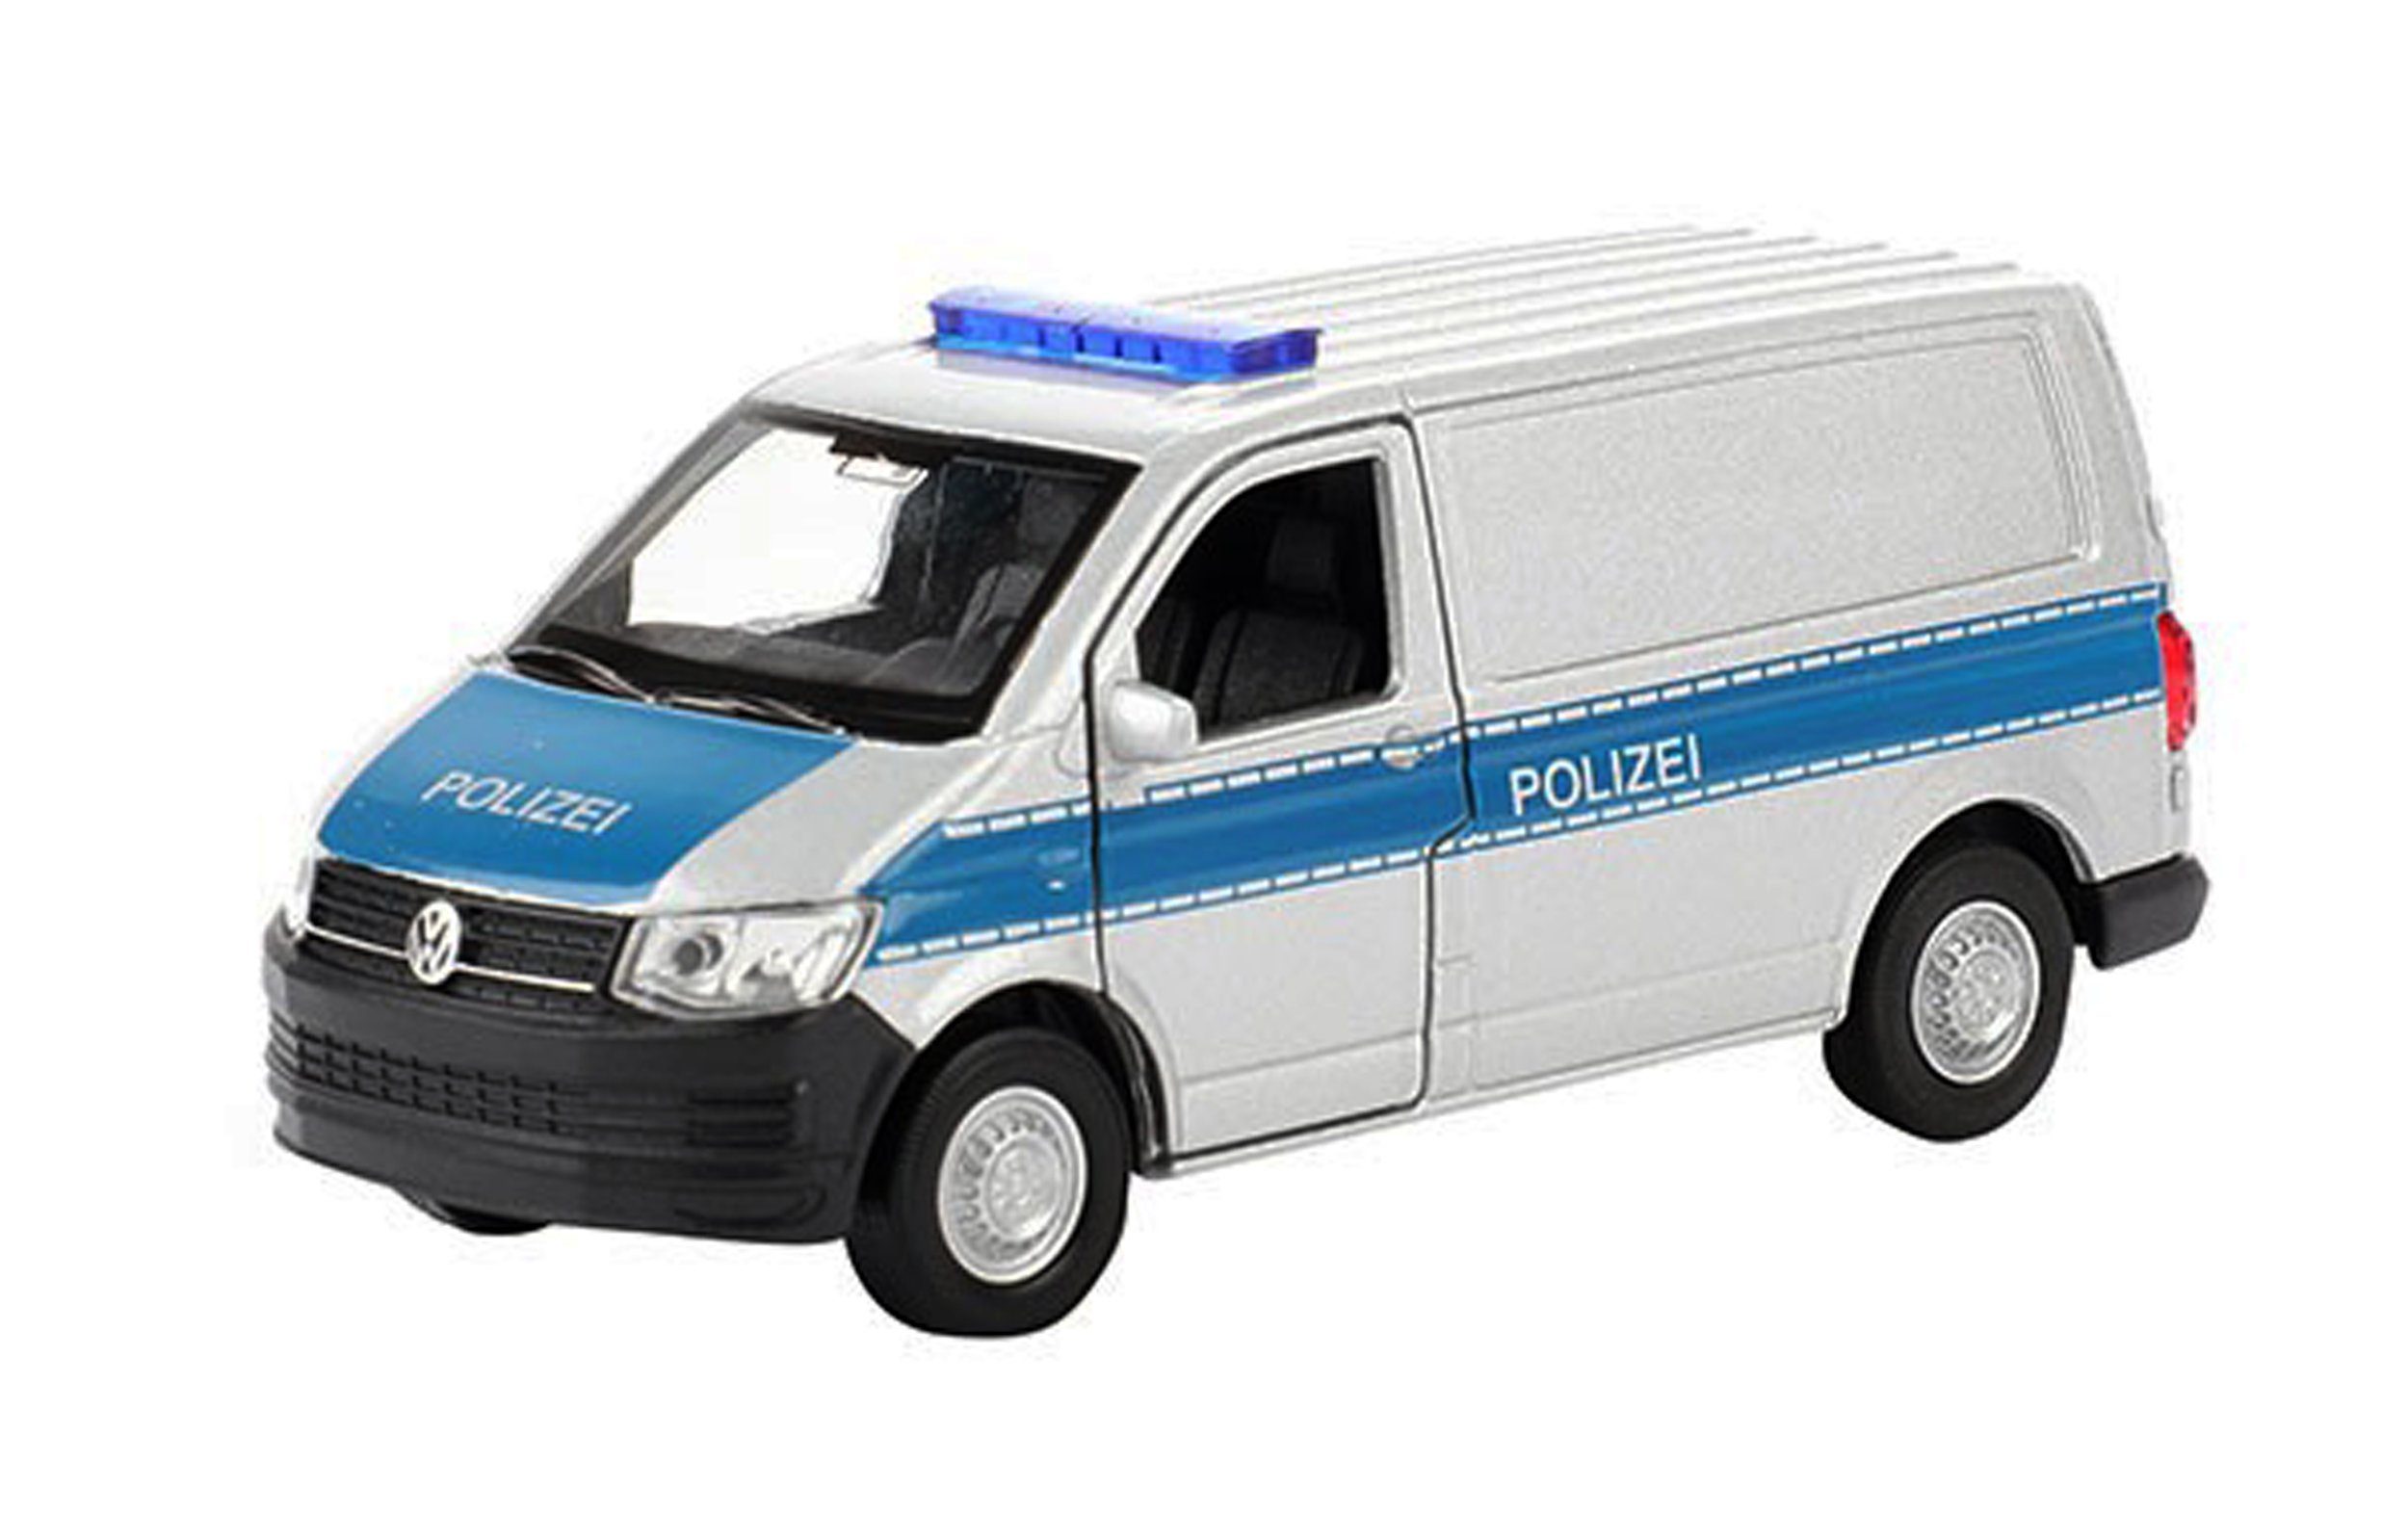 Modellbus VOLKSWAGEN Transporter T6 Van Polizei Bus VW Modell Modellbus Modellauto Spielzeugauto Kinder Geschenk 60